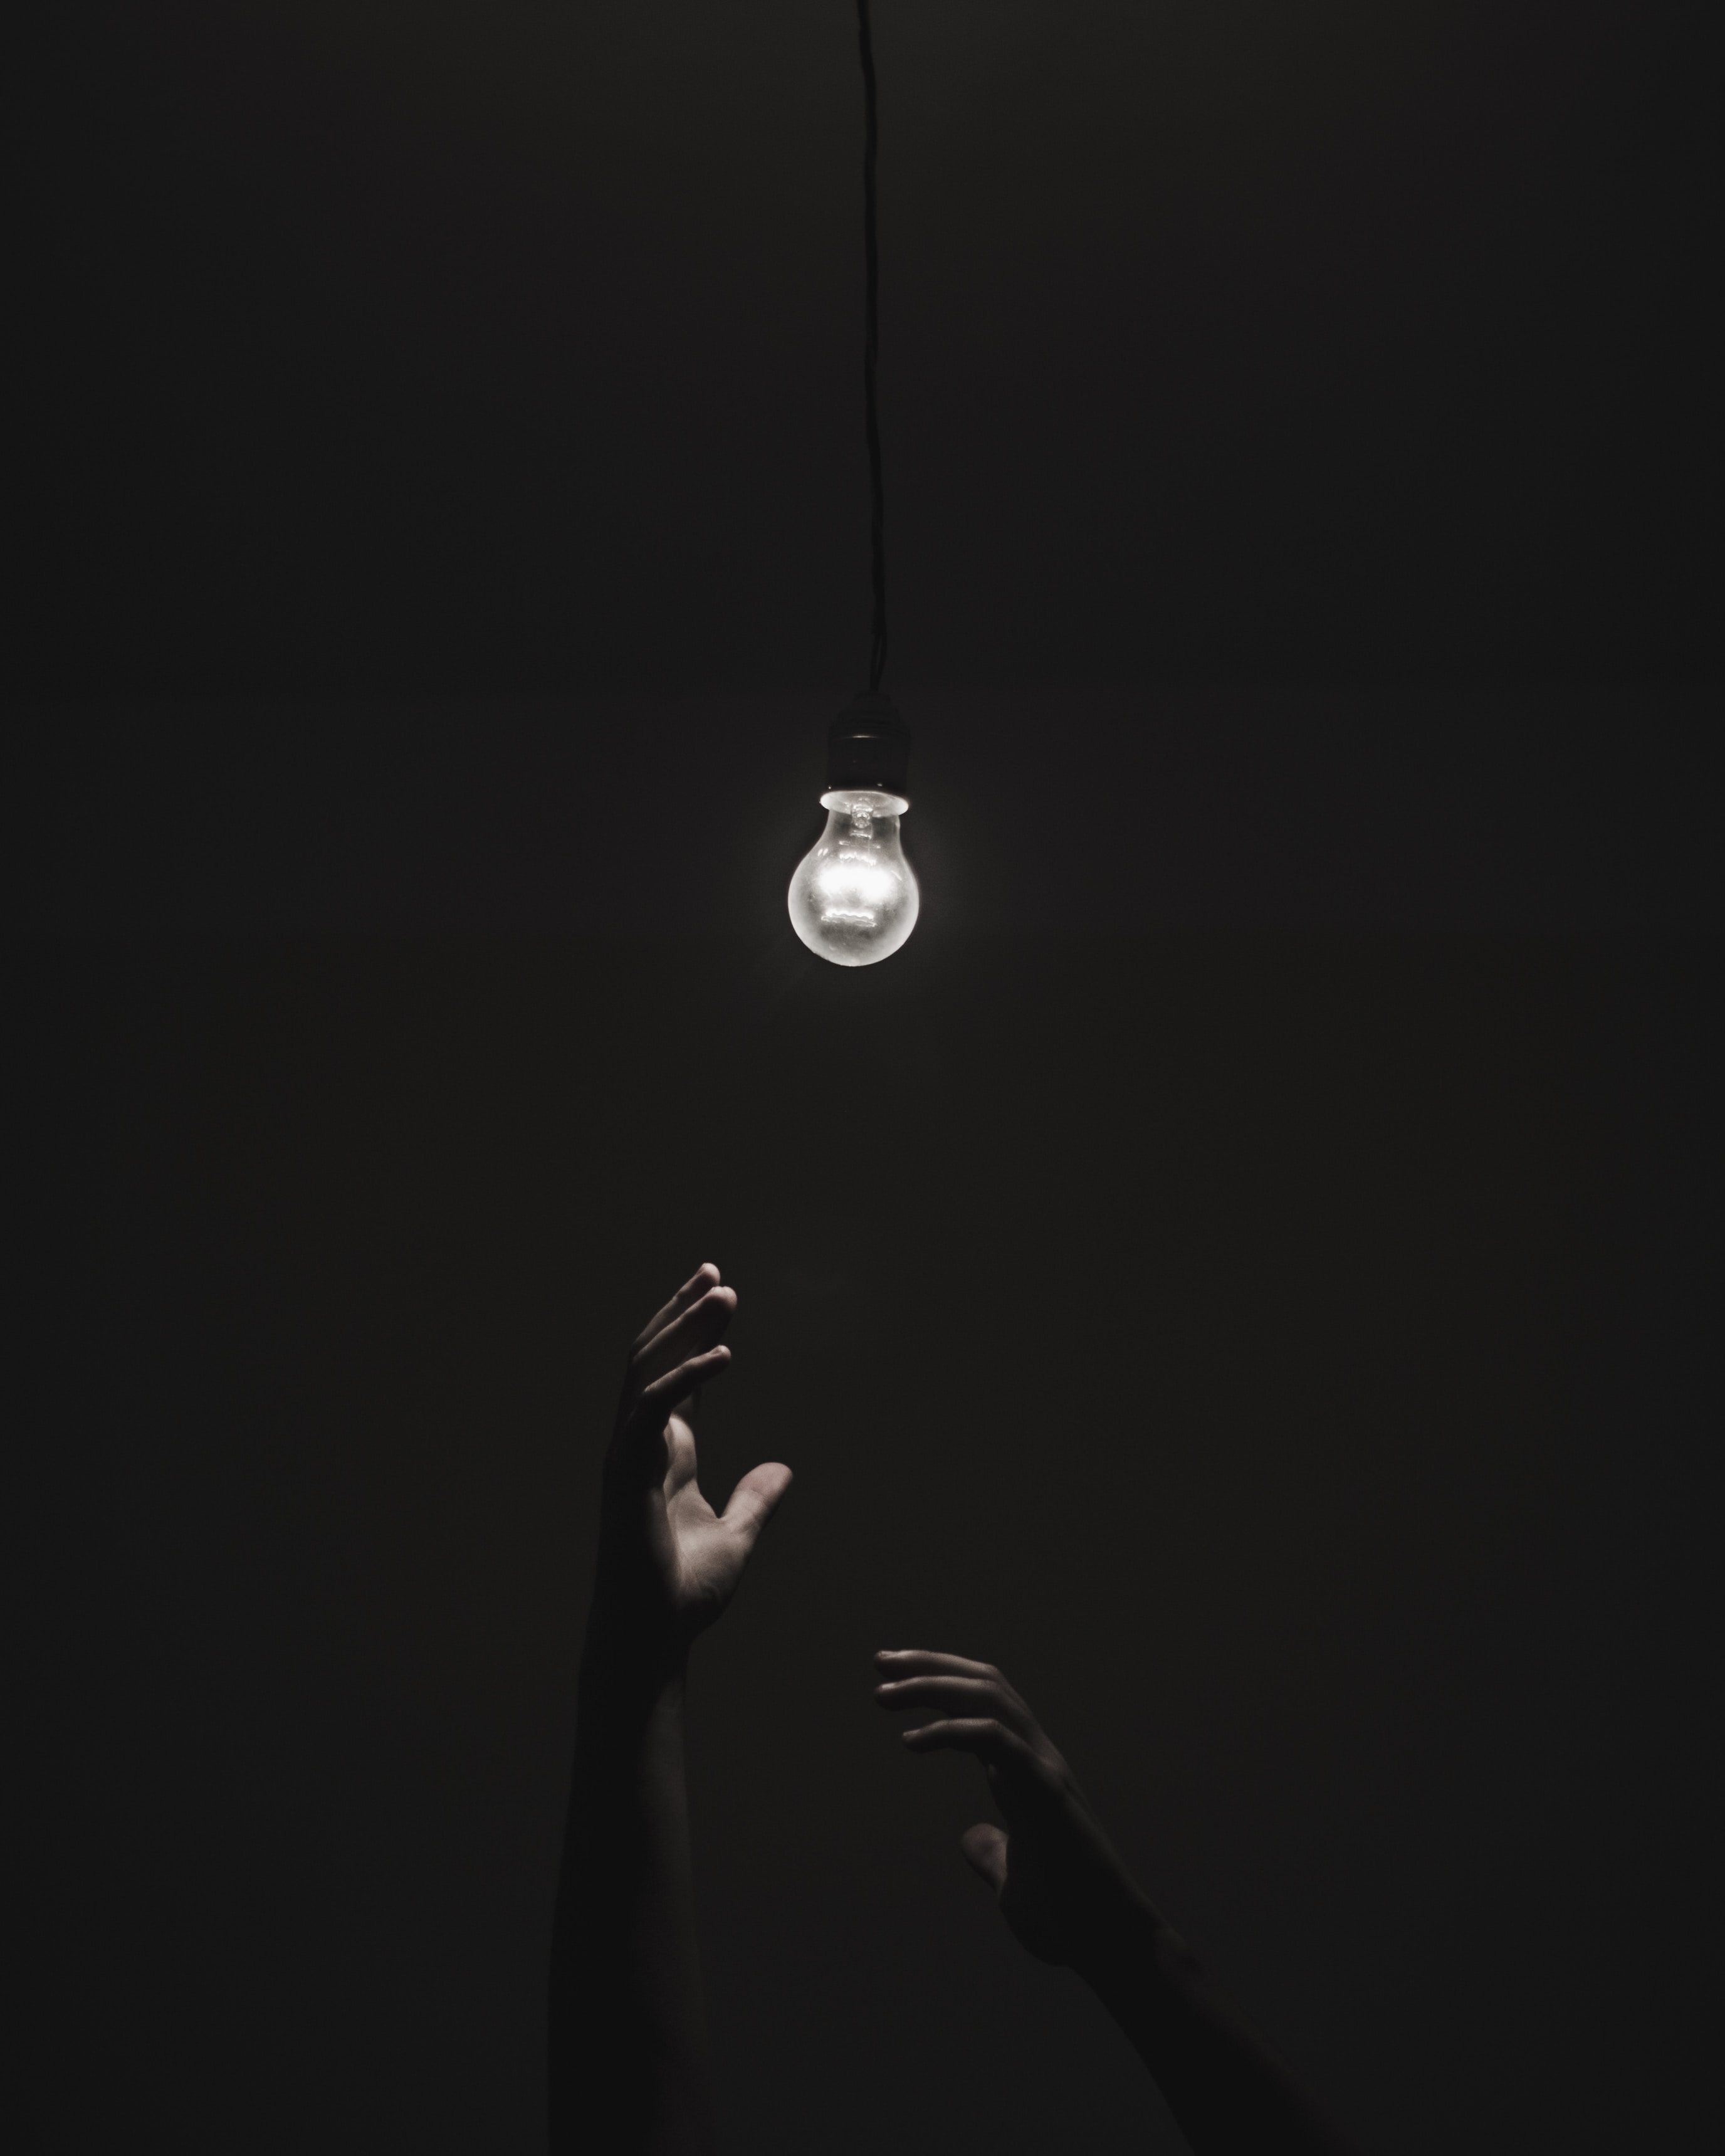 lighting, illumination, black, dark, hands, light bulb